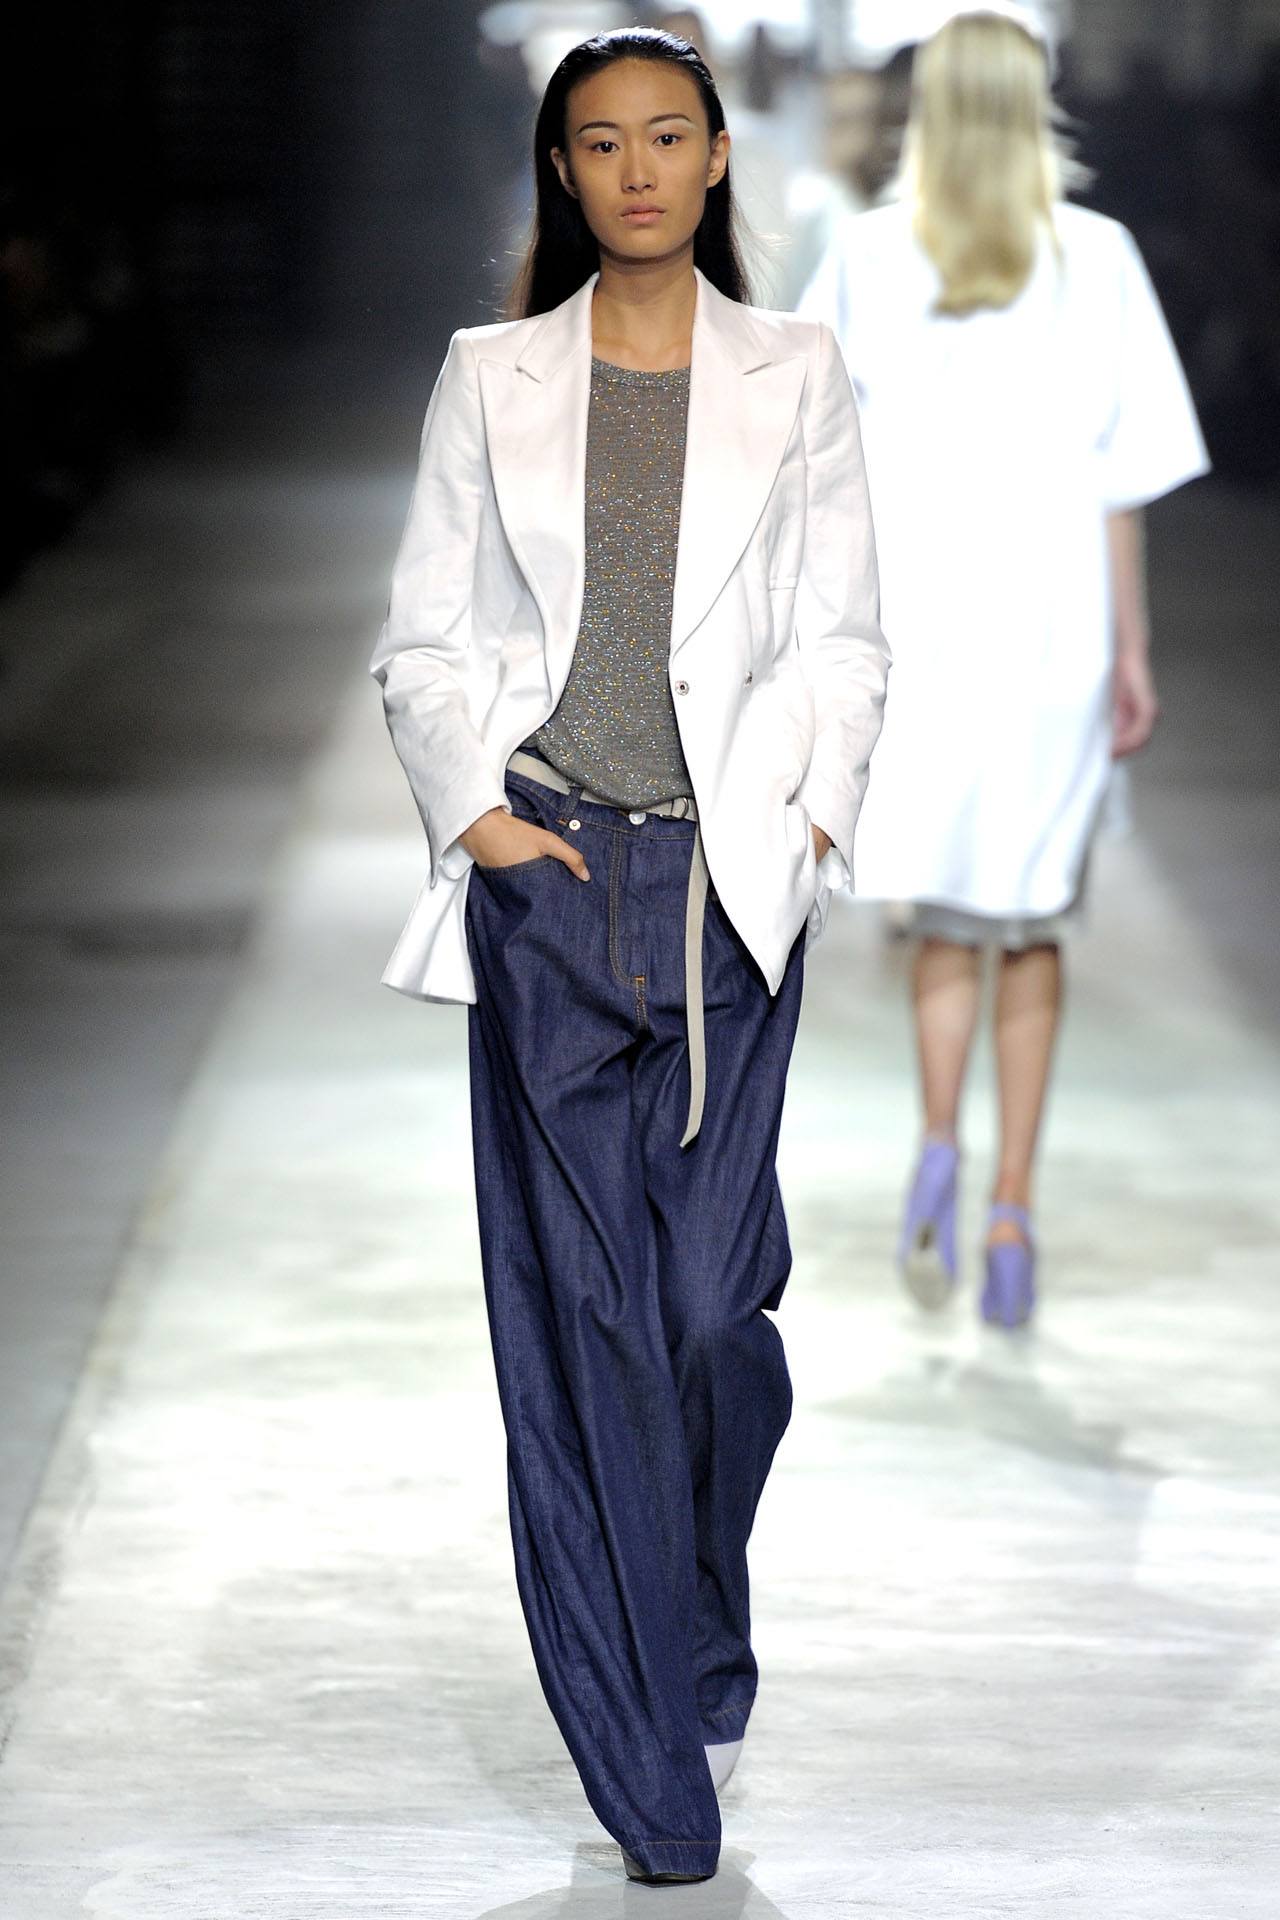 Пиджак под джинсы: как выбрать, цветовое решение, стильные модели и фасоны